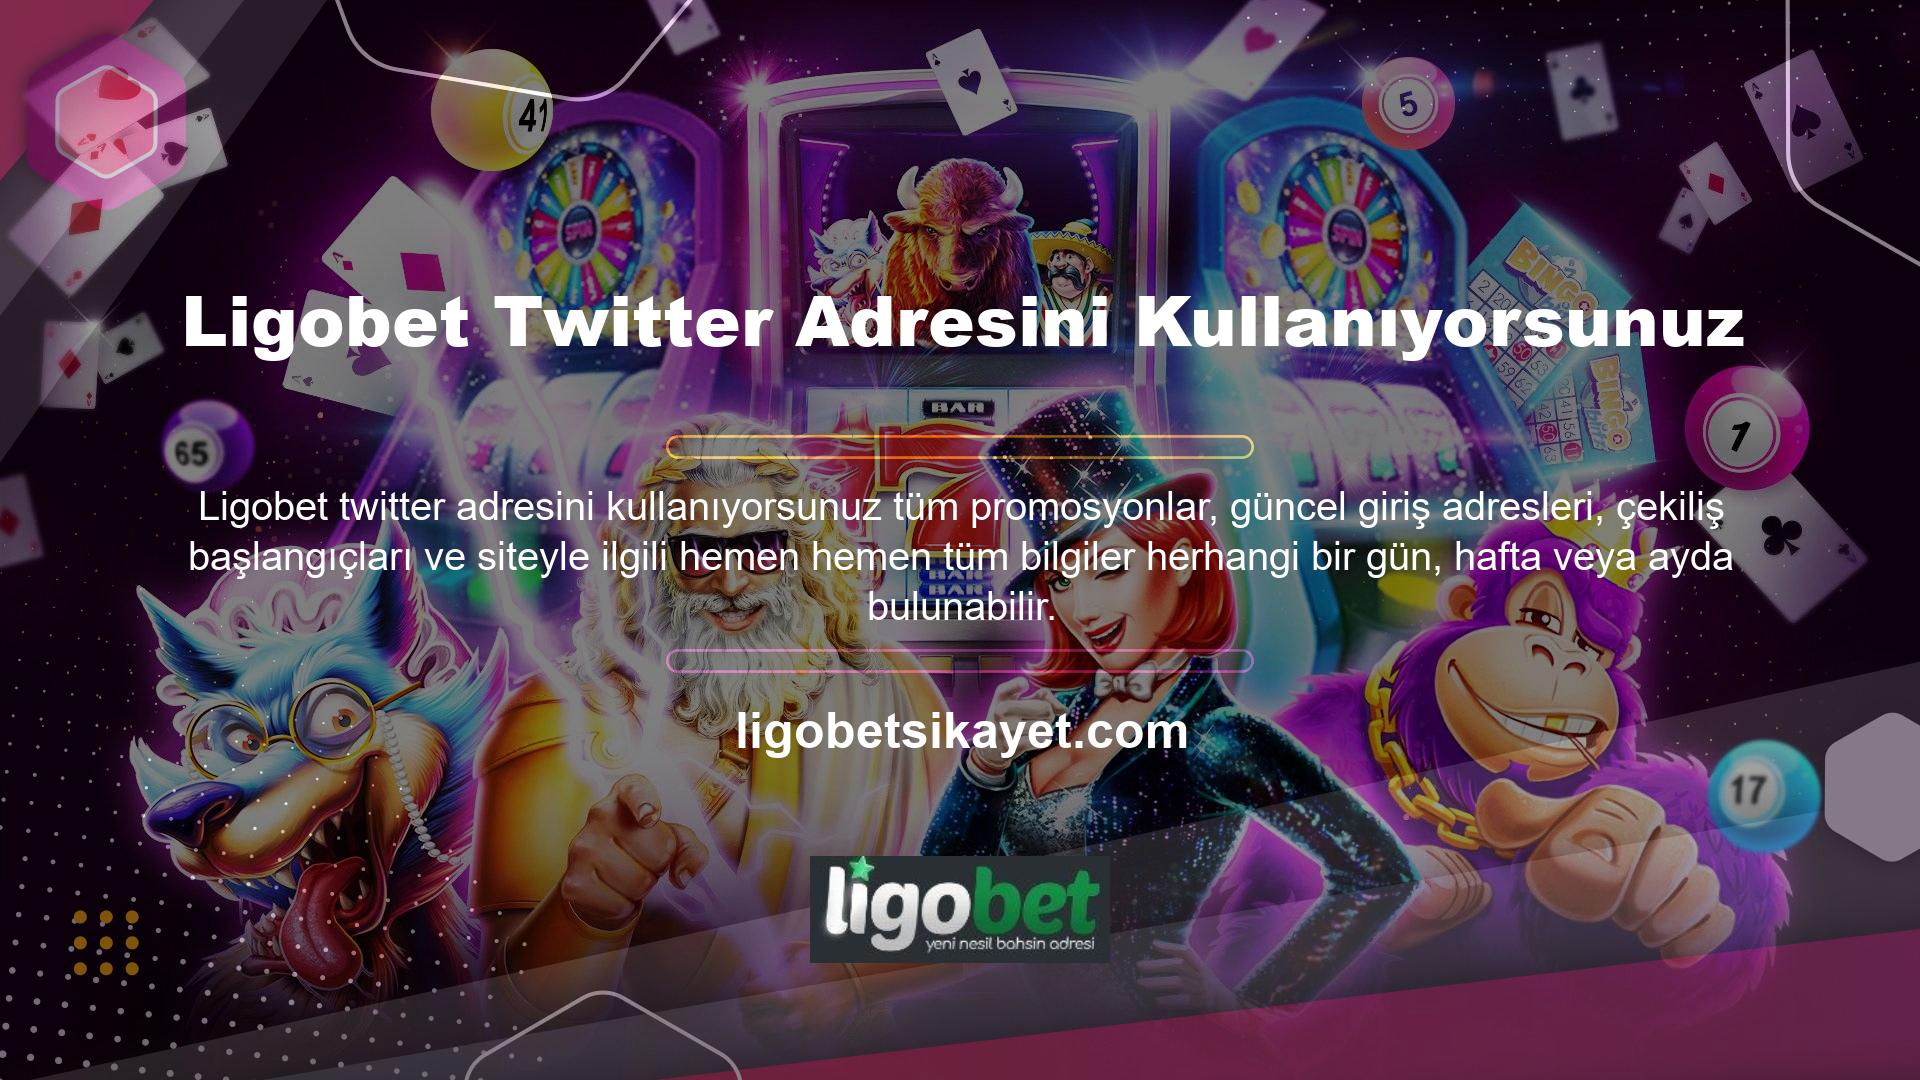 Her etkinlik için özel olarak düzenlenecek olan Ligobet Twitter hesabı üzerinden dağıtılacaktır